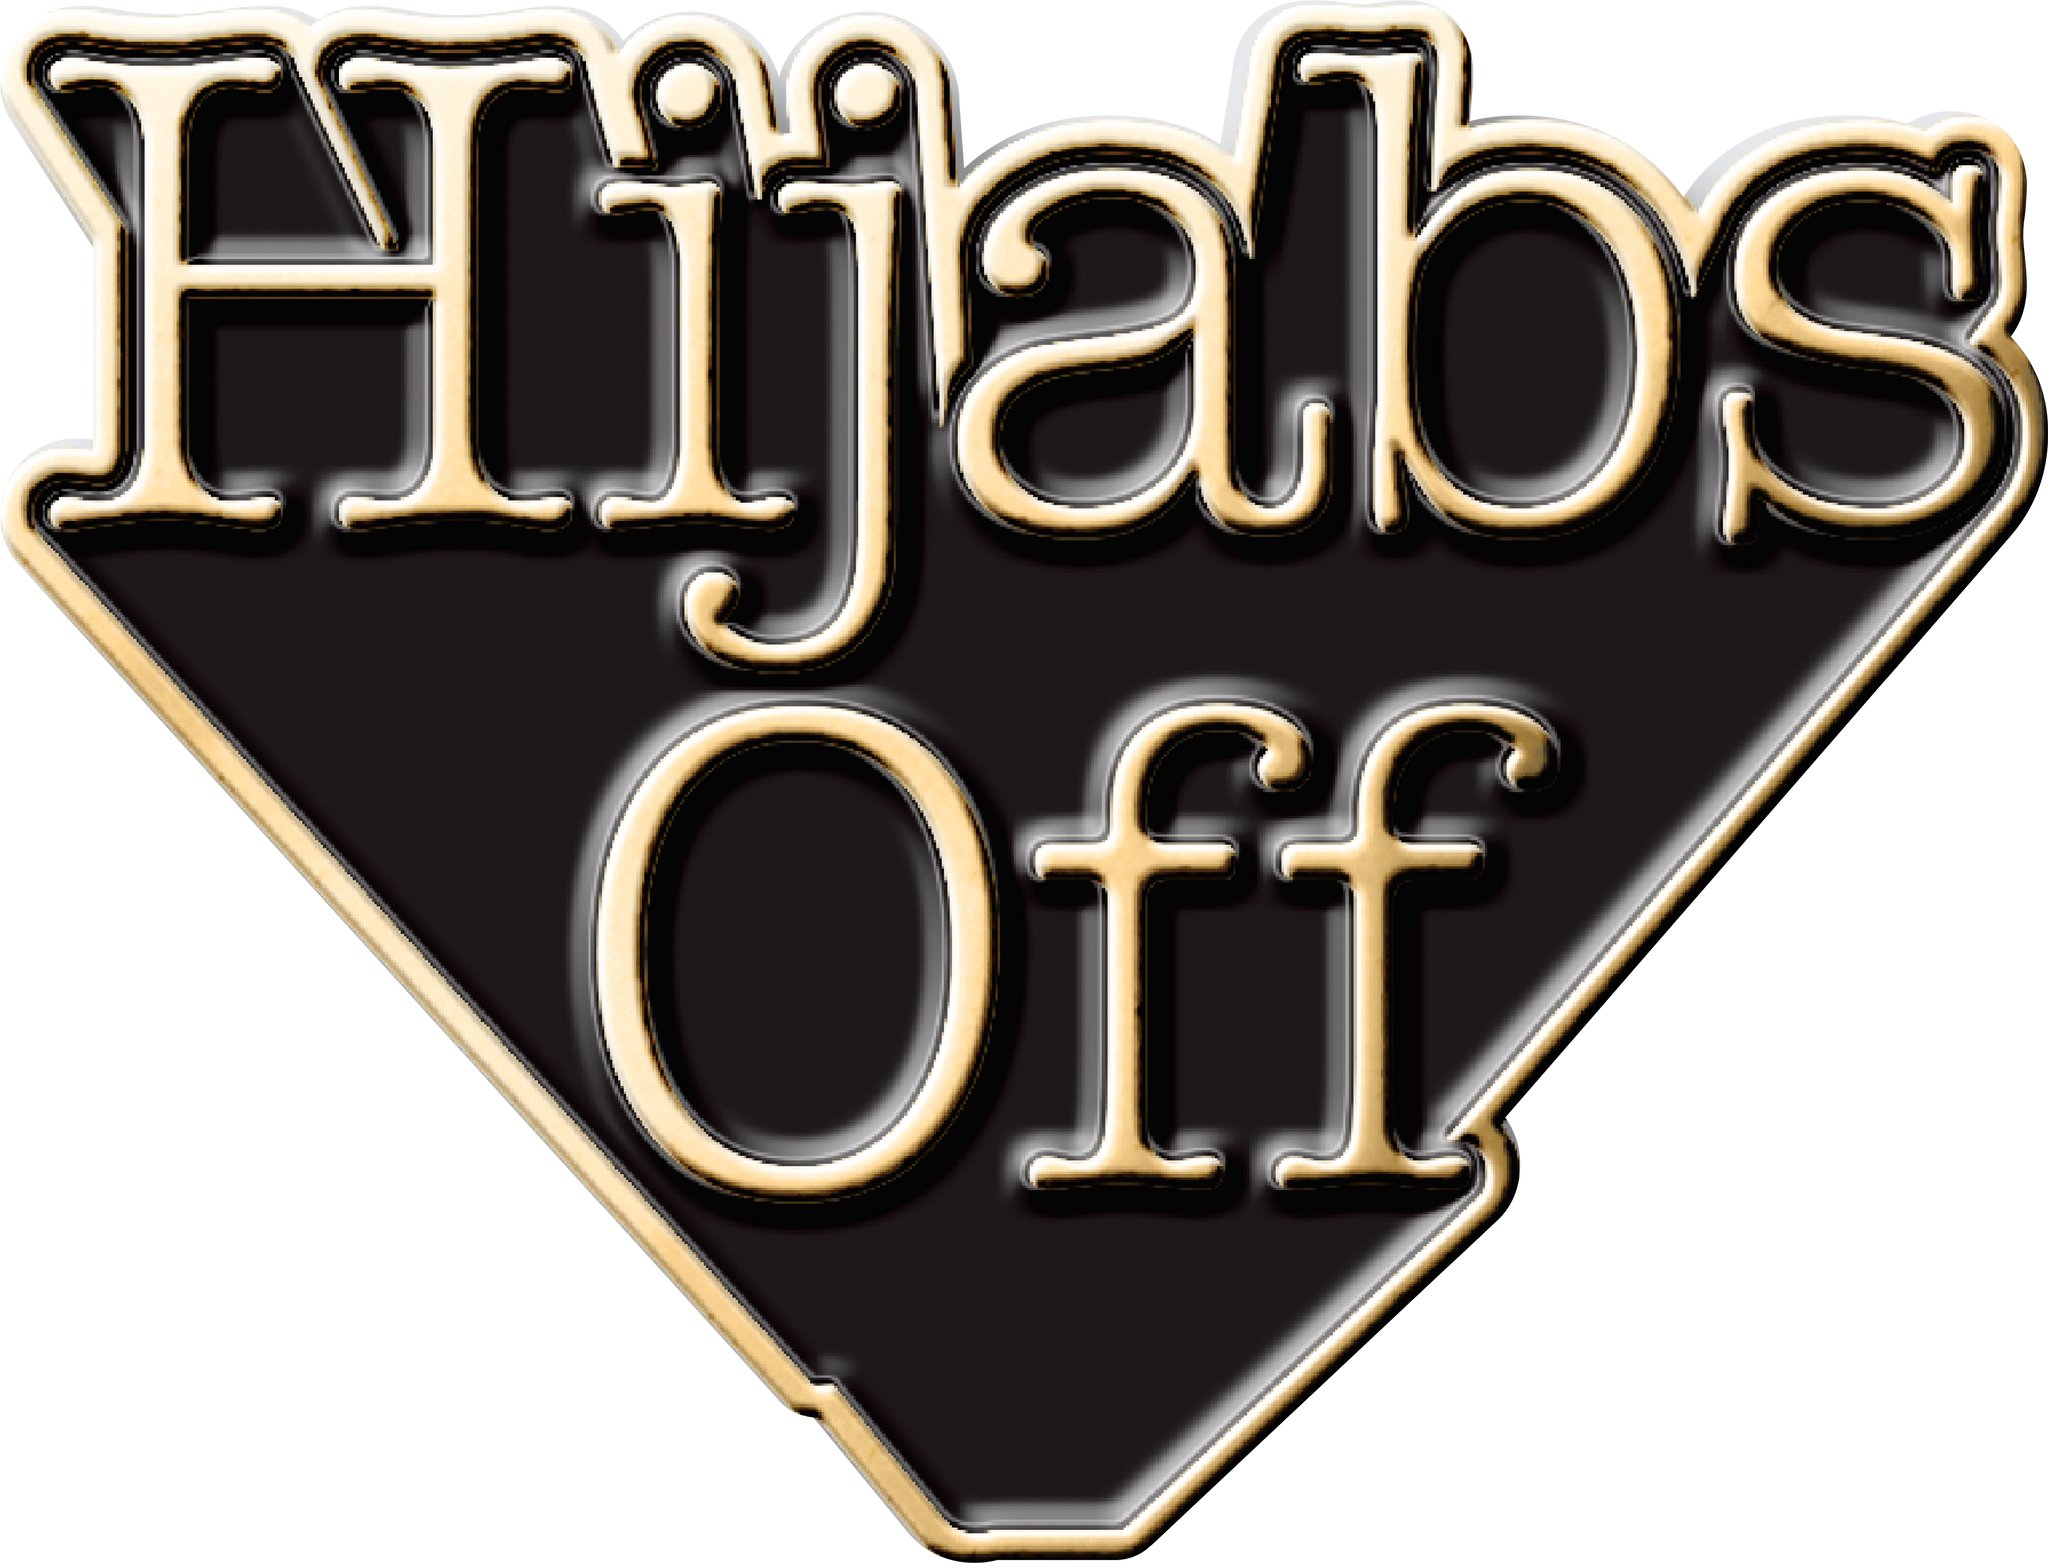 hijabsoff